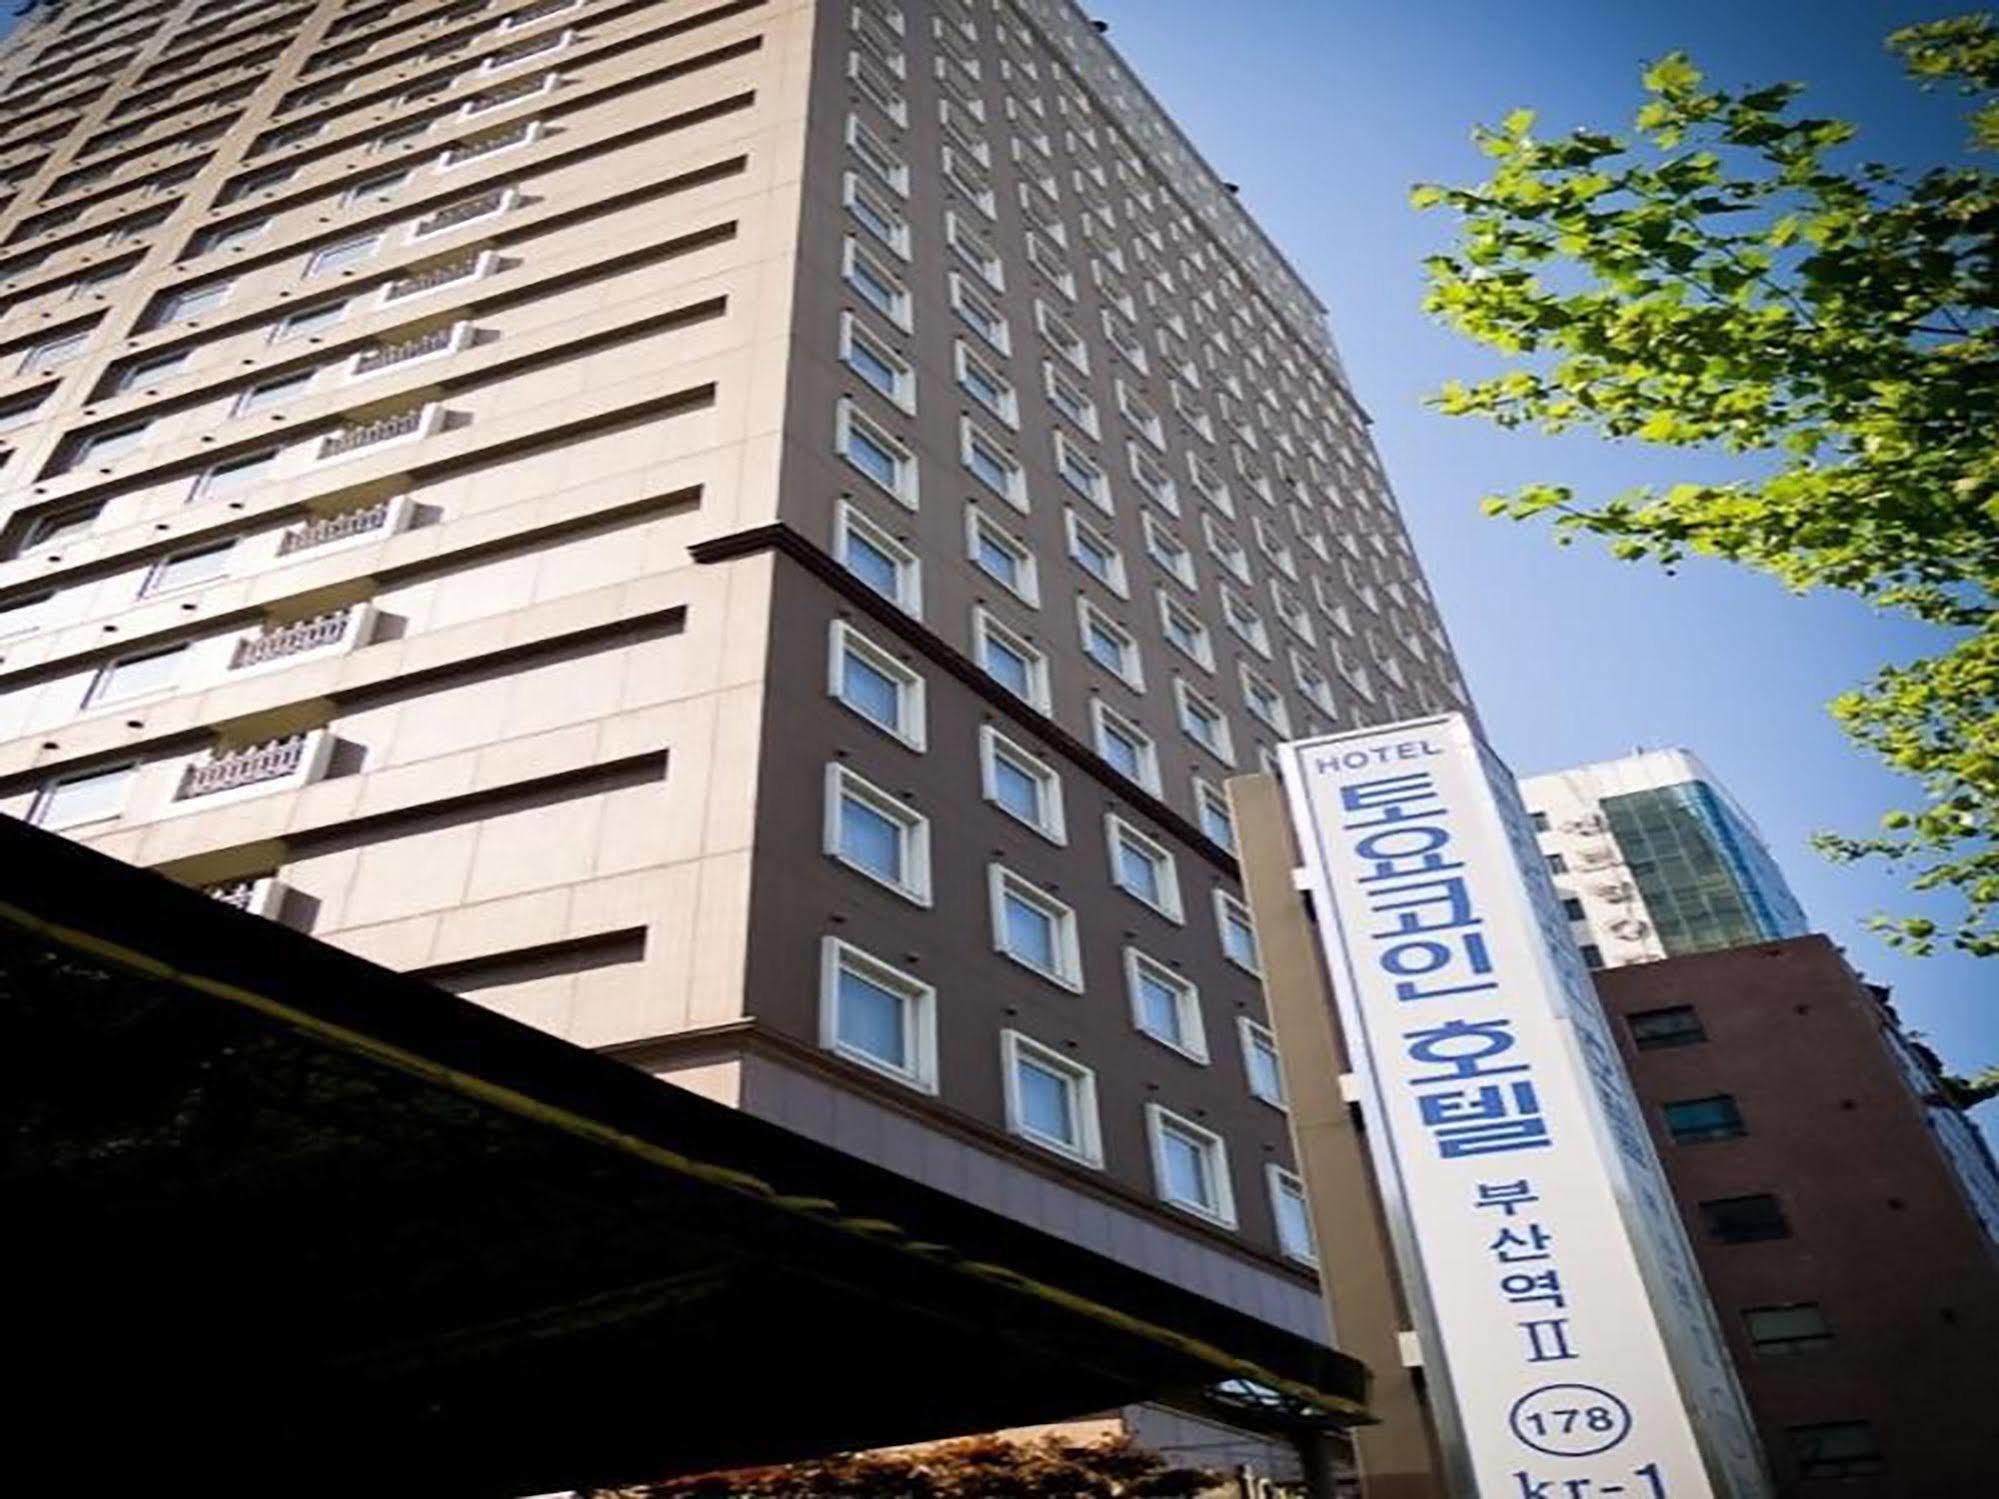 Toyoko-Inn Busan Jungang Station Exterior foto